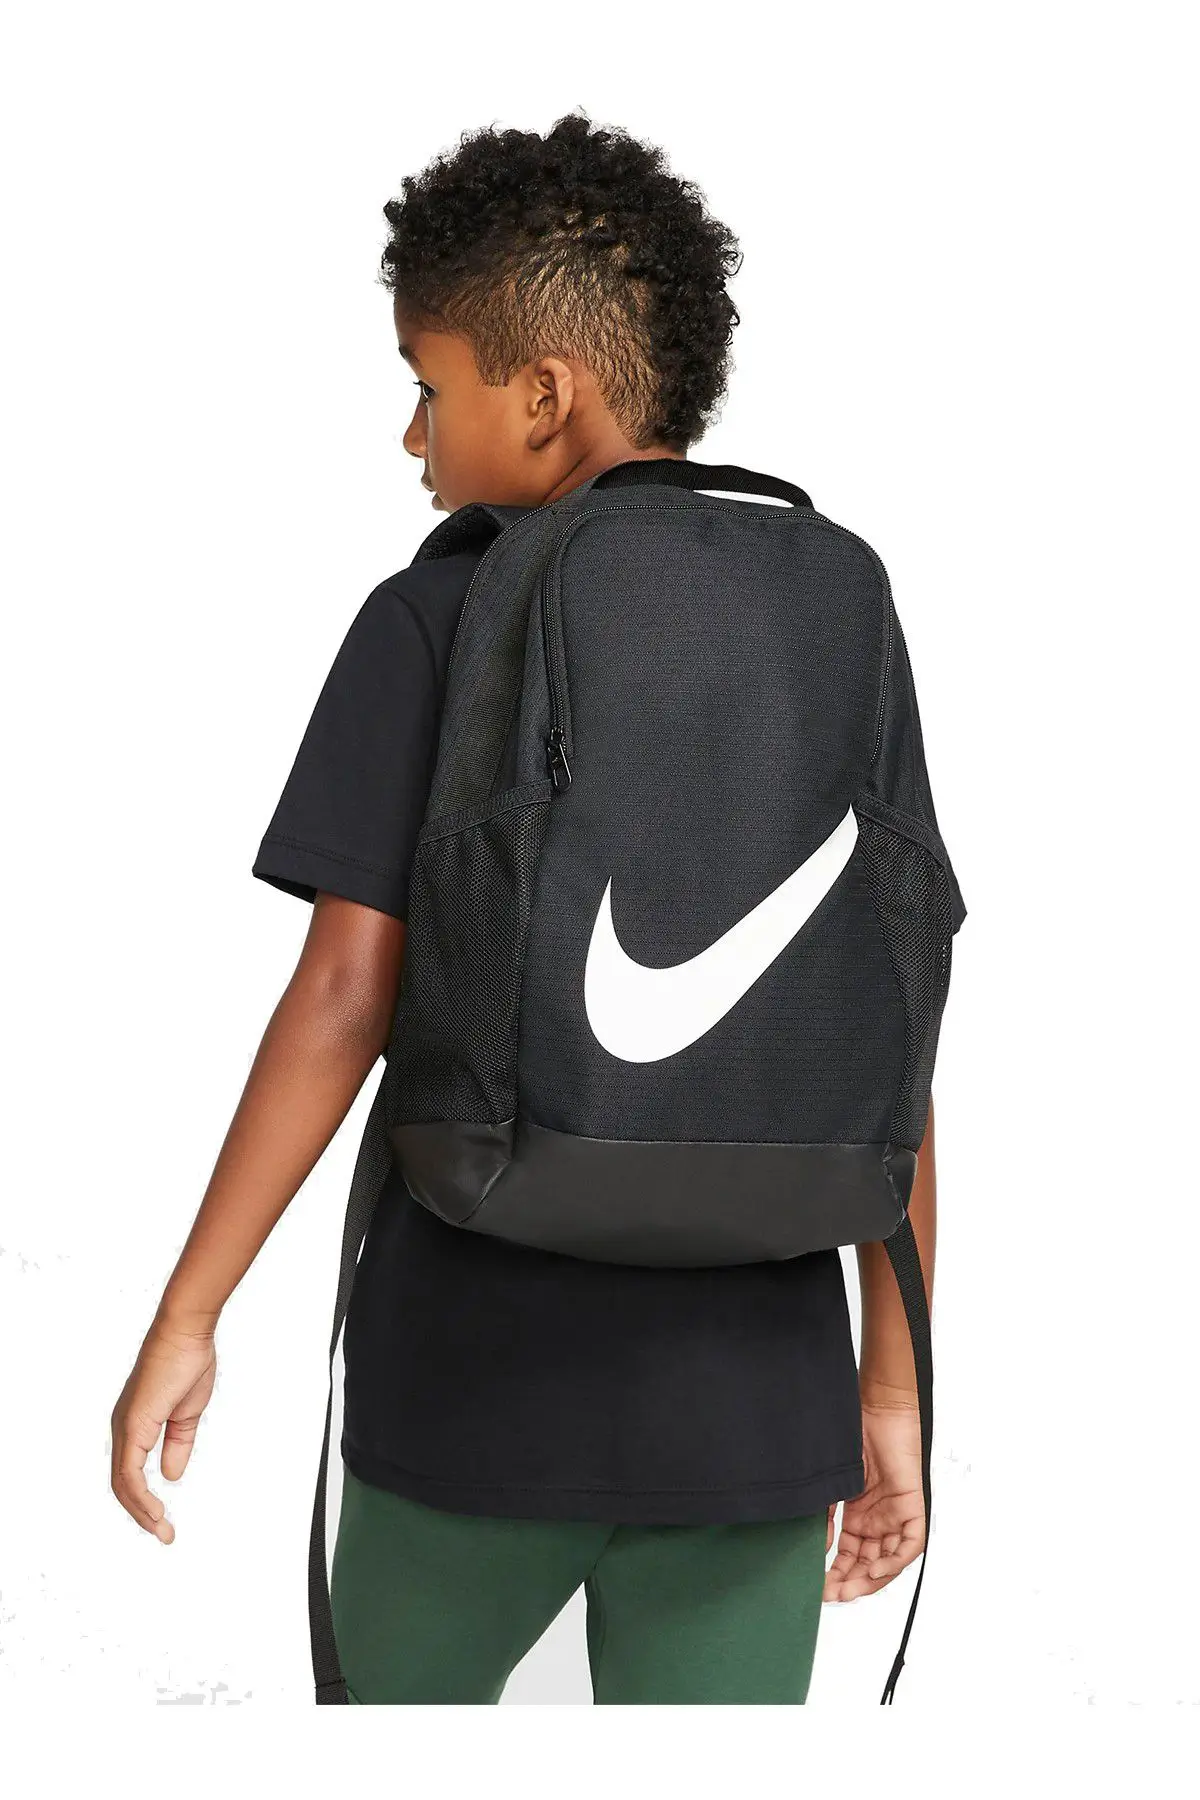 Nike Brasilia FA19 Backpack Siyah Çocuk Sırt Çantası - BA6029-010